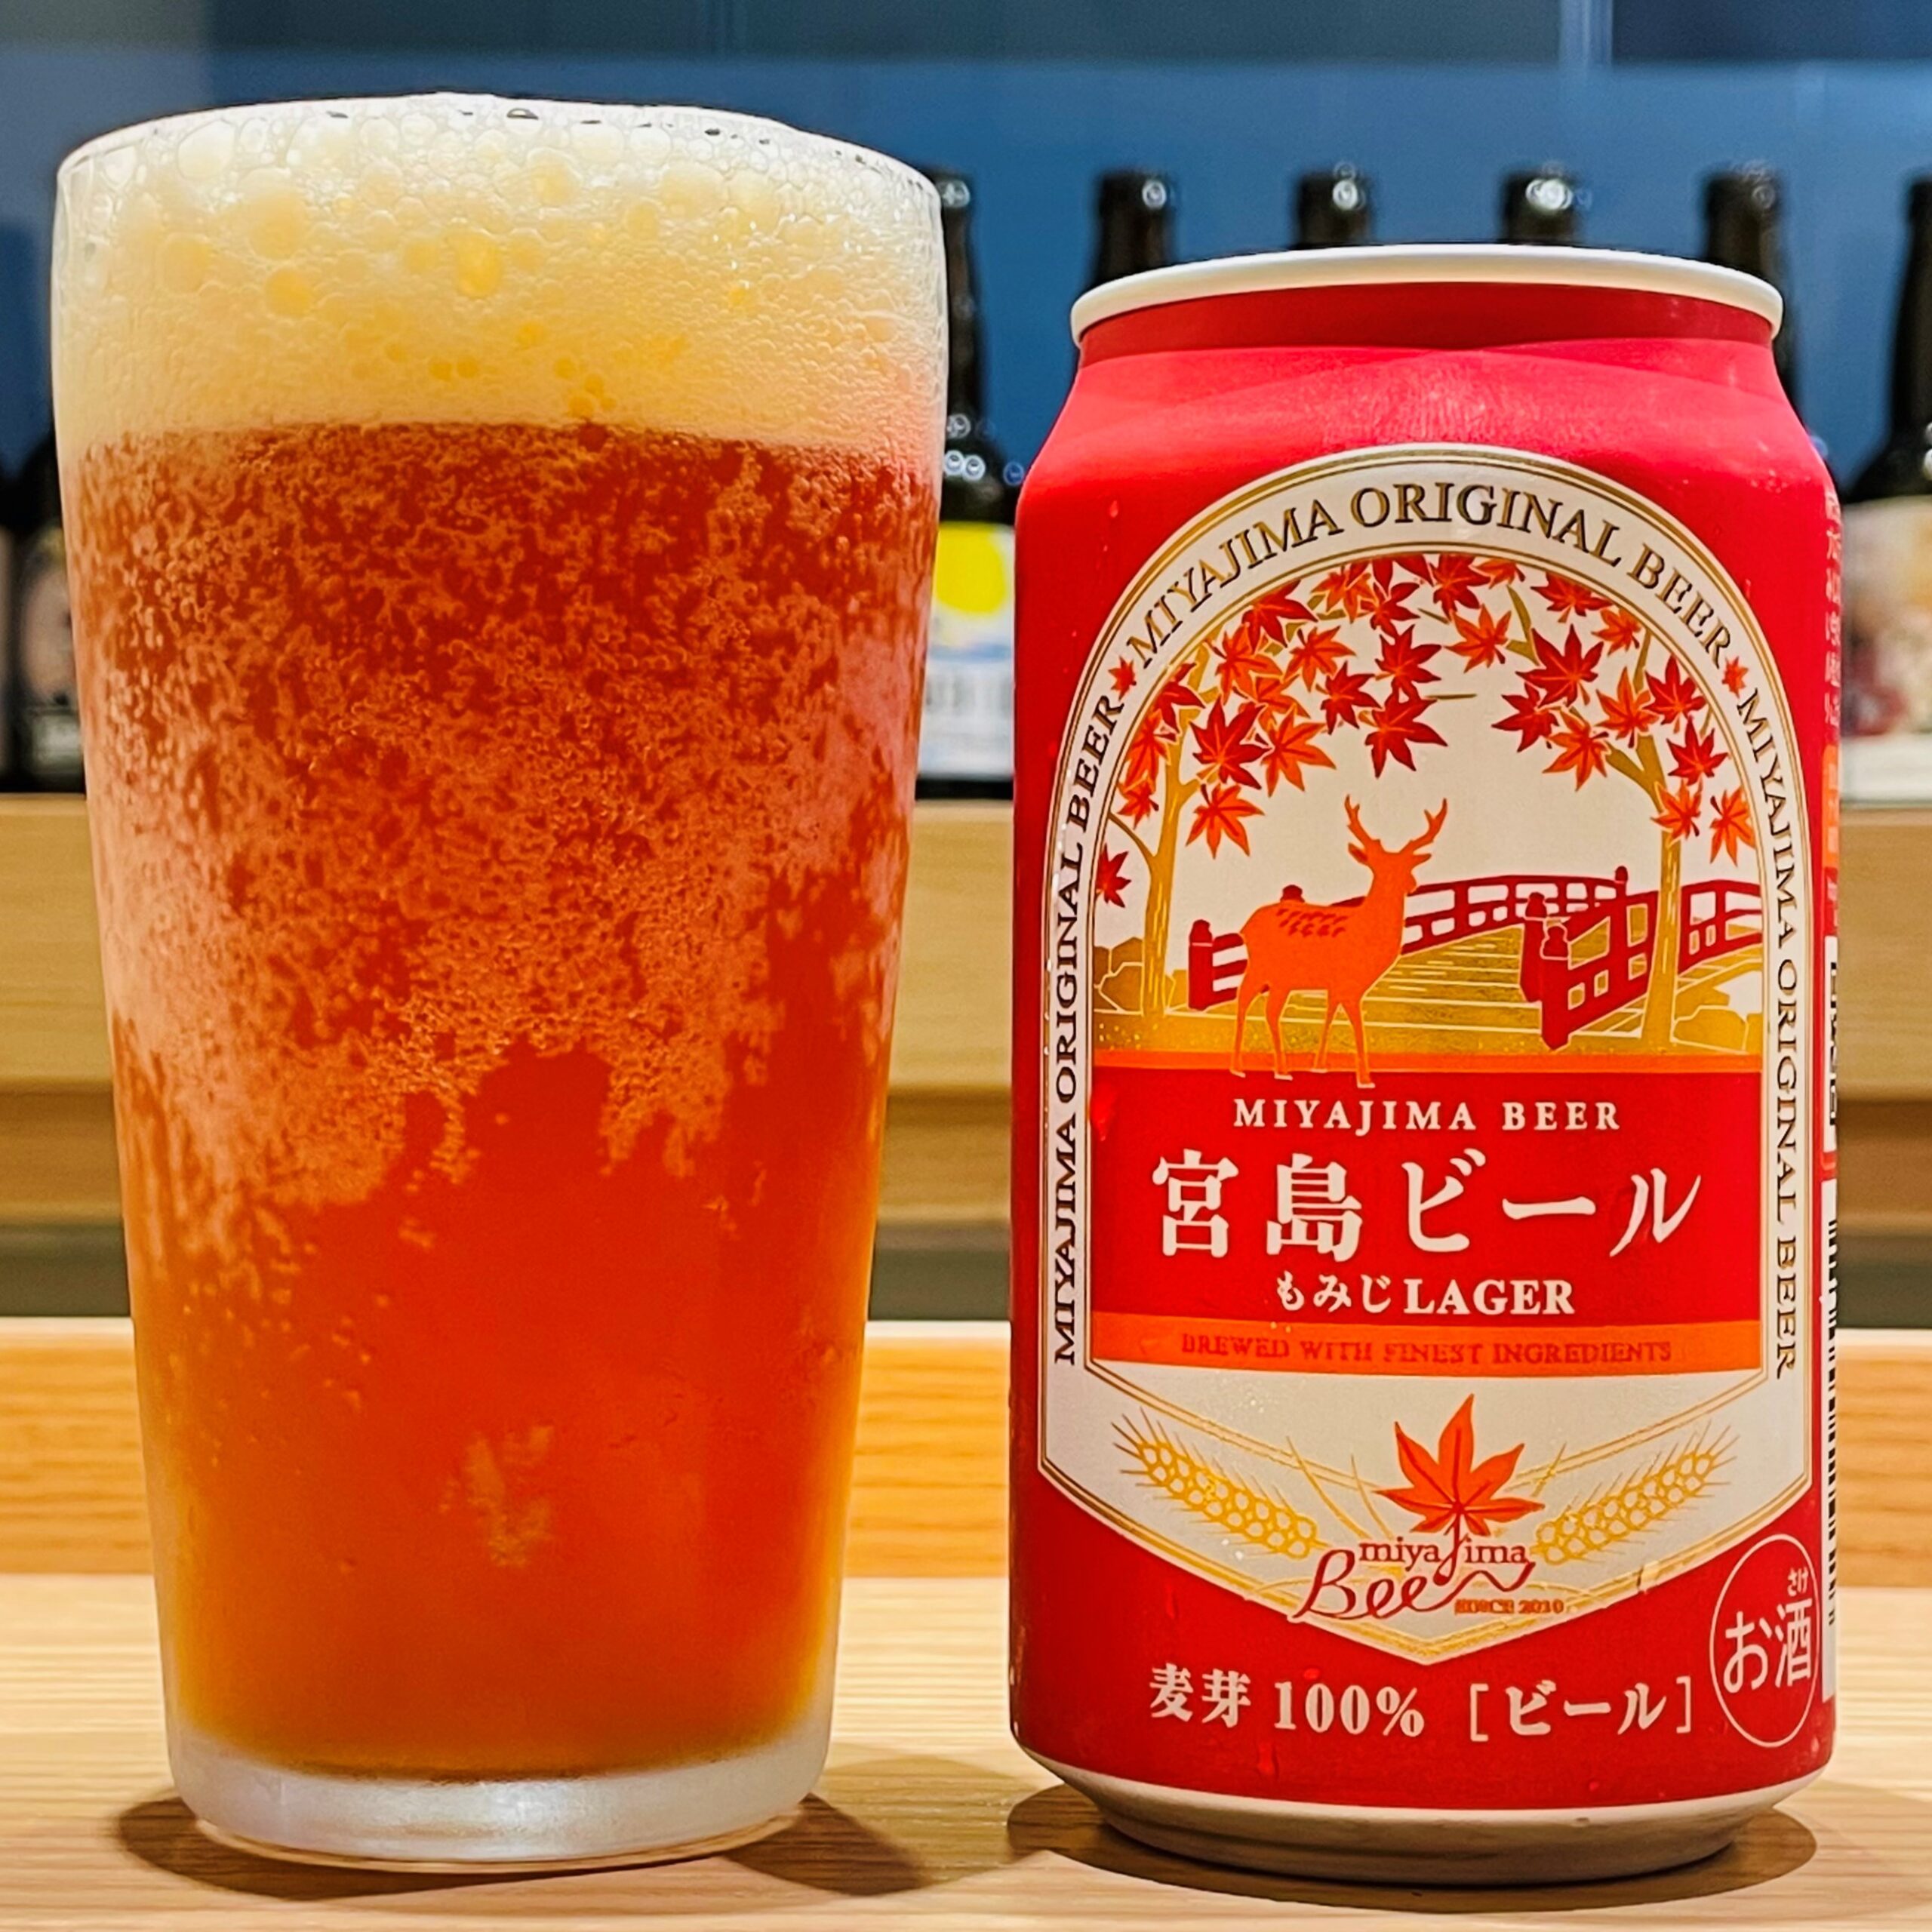 宮島ビール もみじLAGER 350ml